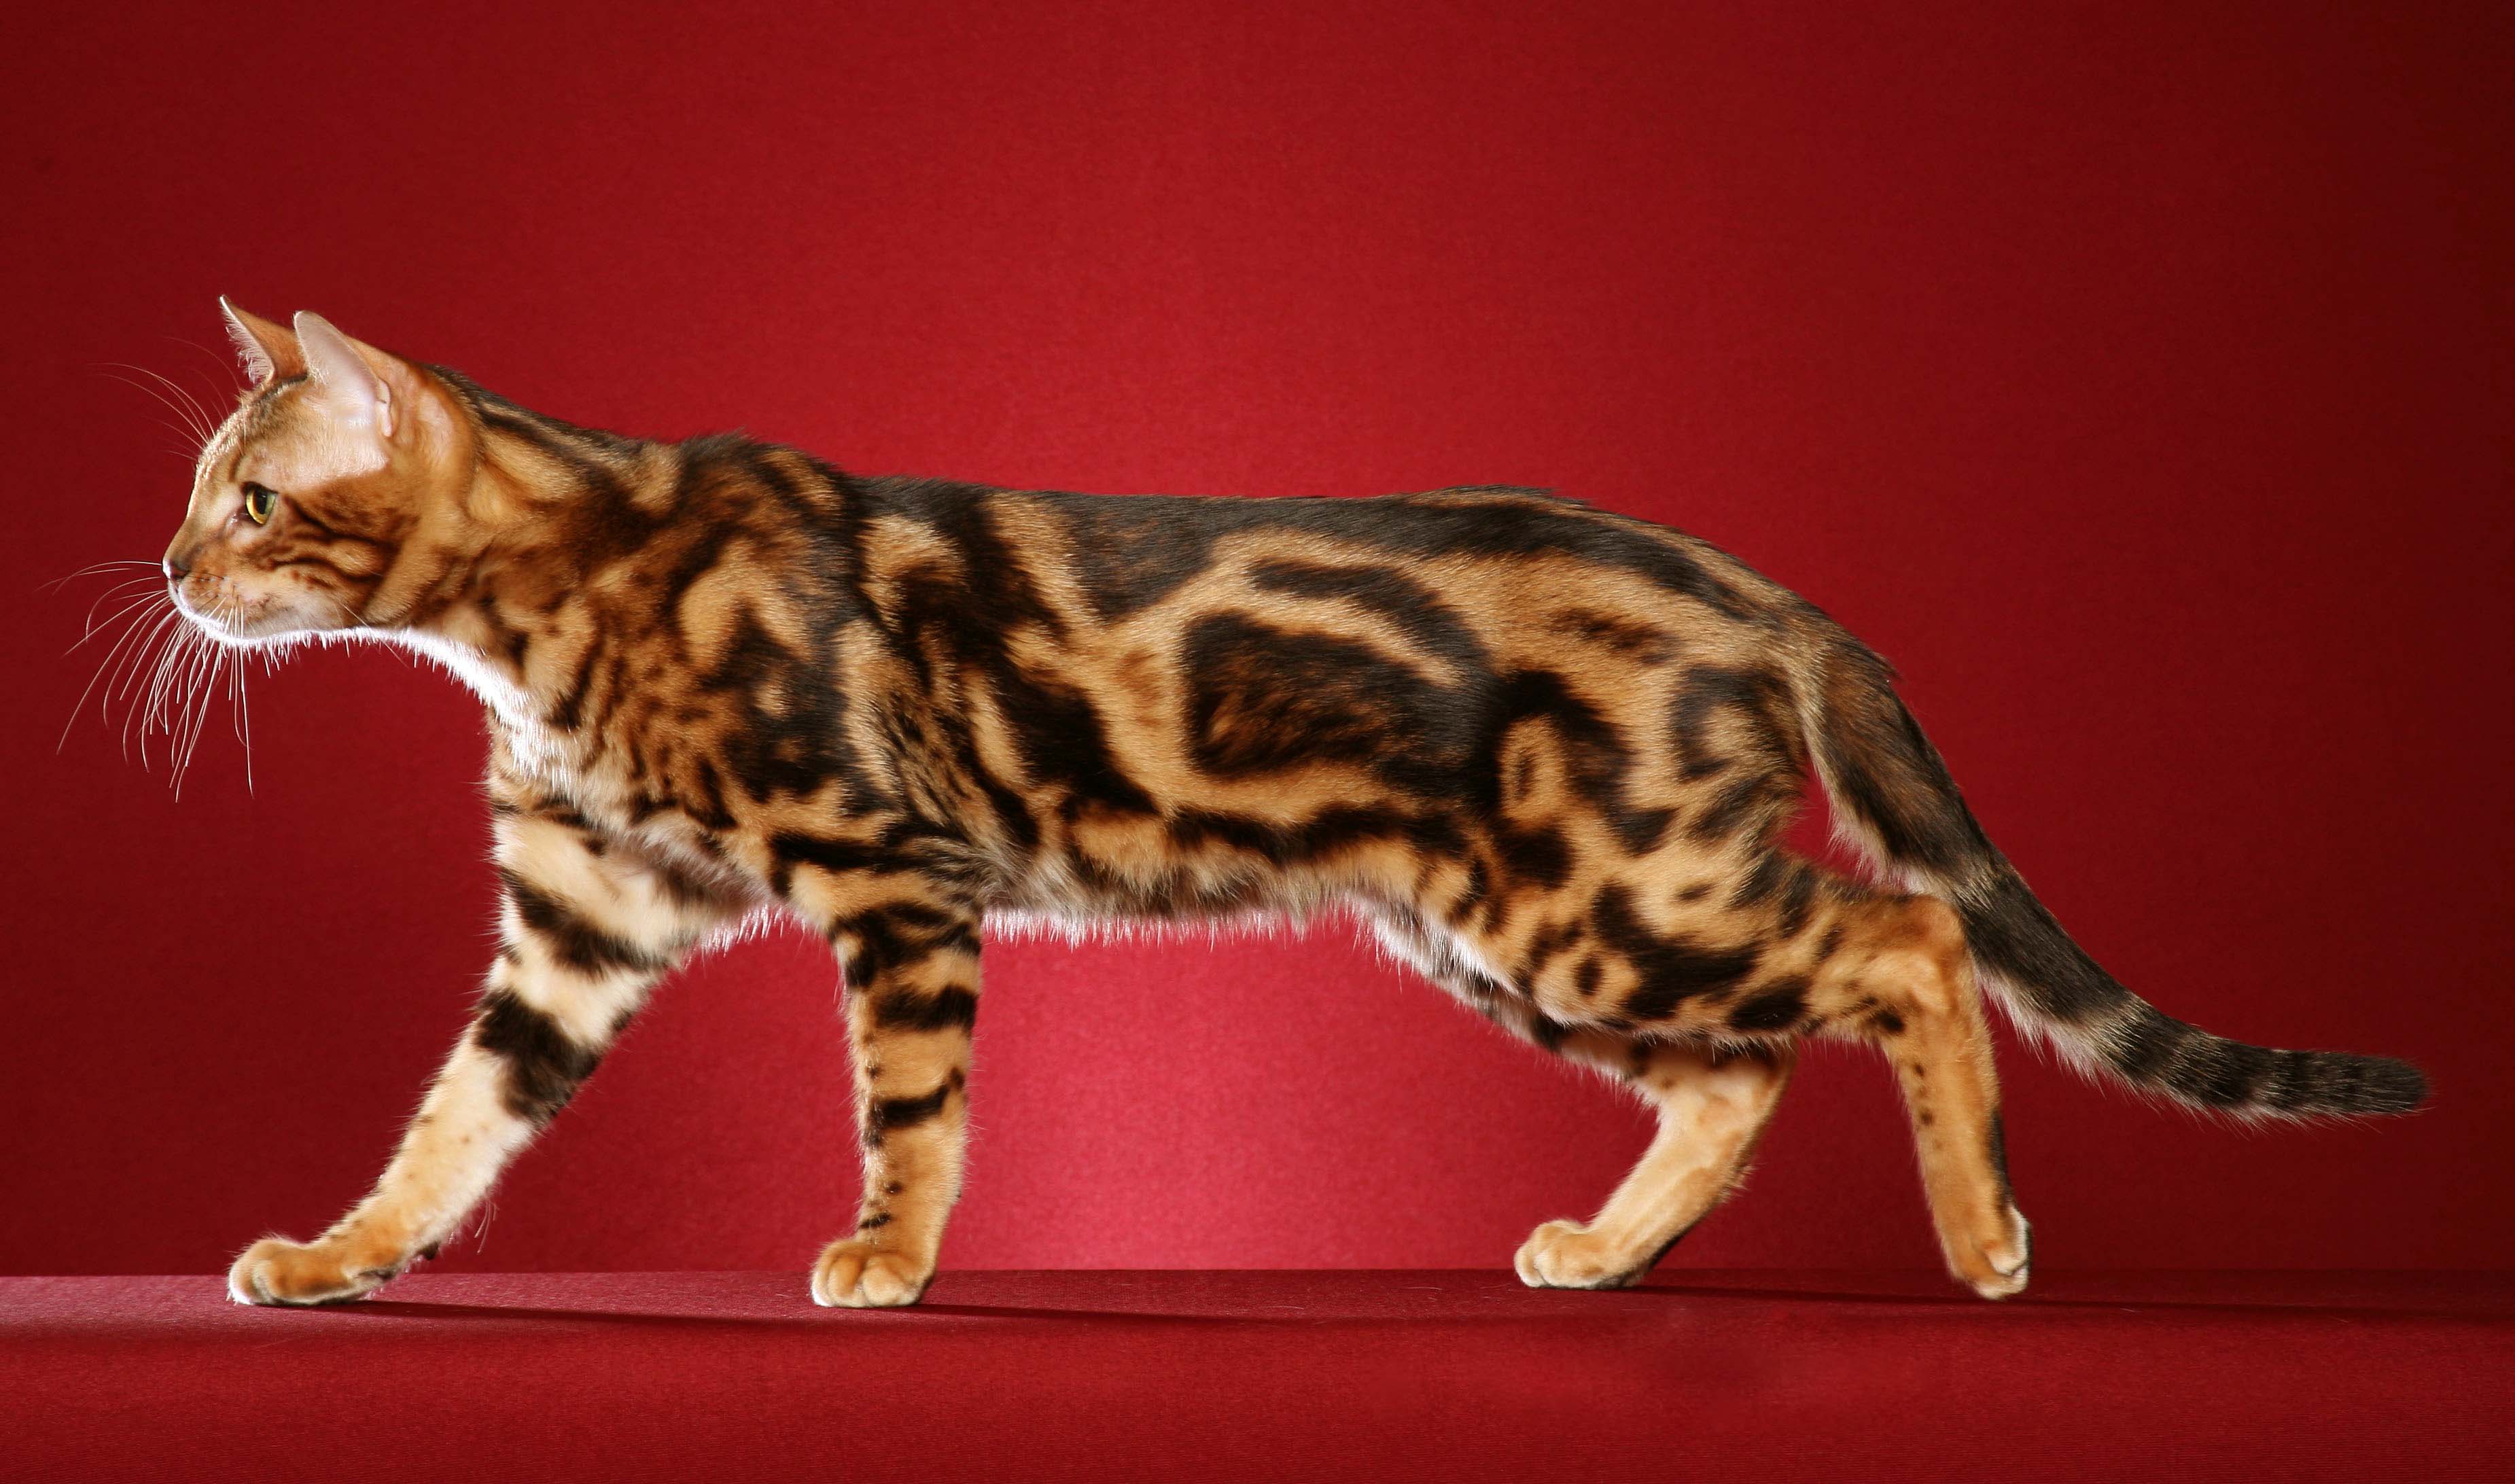 Рассмотрите фотографию пятнистой кошки породы бенгальская. Браун Марбл бенгалы. Бенгал Браун табби Марбл. Бенгальская короткошерстная бенгал. Бенгальский кот Браун Марбл.